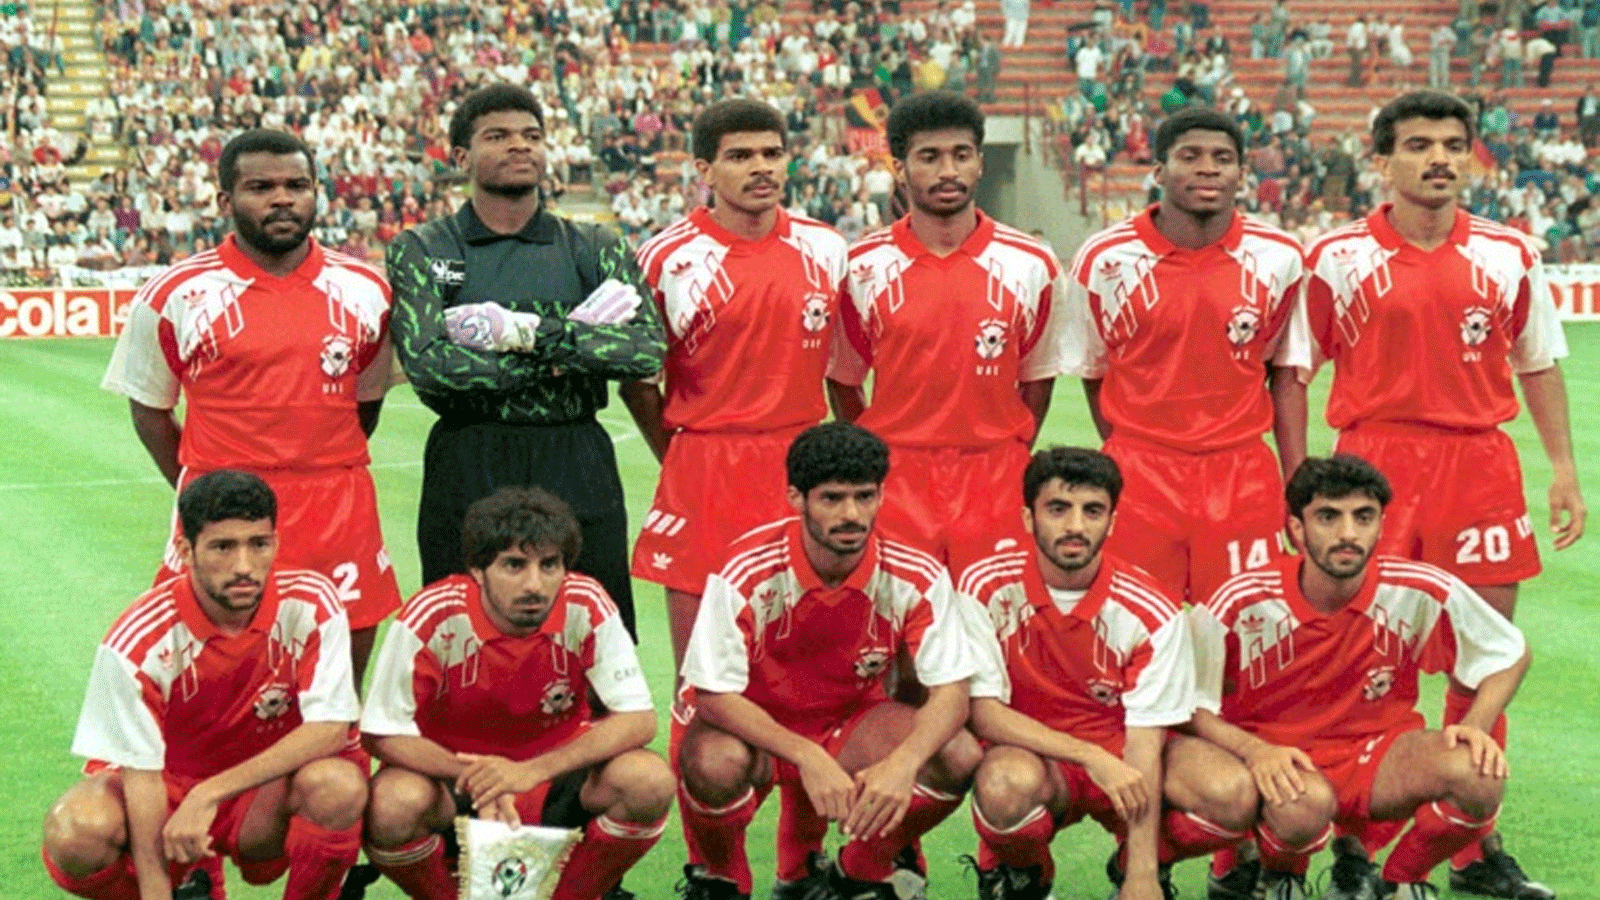 منتخب الامارات الذي شارك في كأس العالم لكرة القدم عام 1990 في ايطاليا